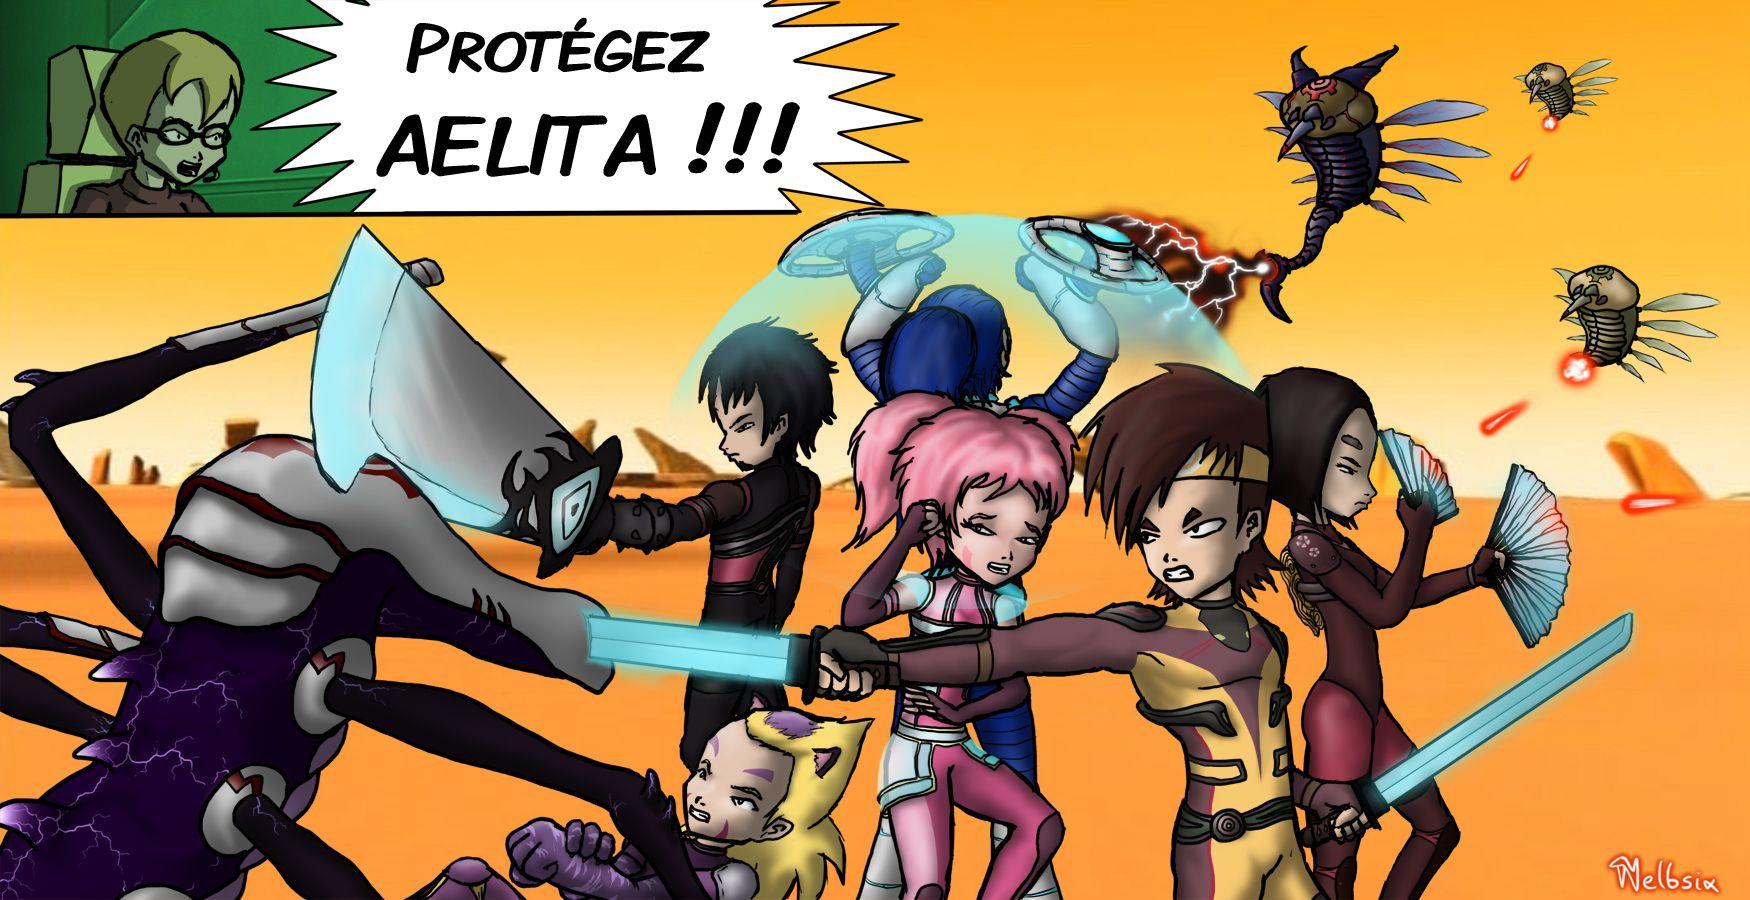 Protect Aelita